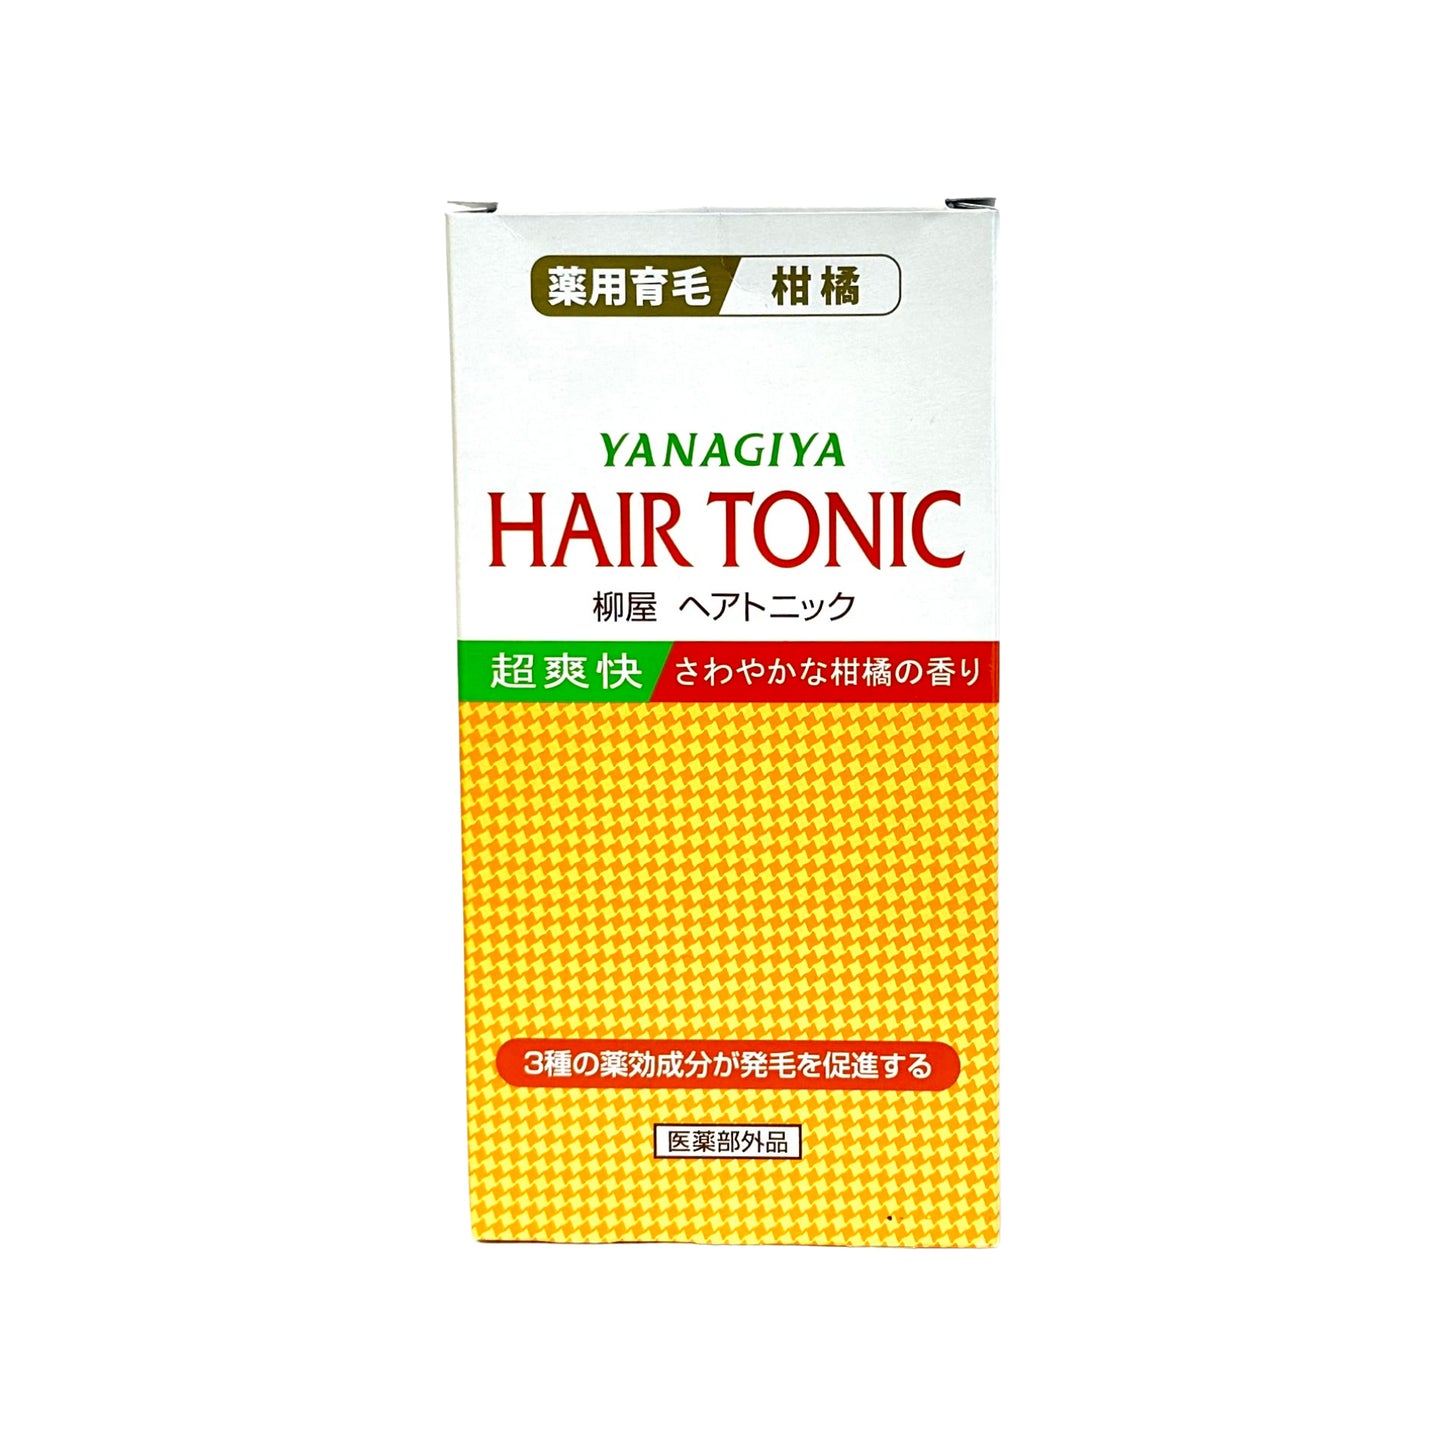 Ganbaro Japan Yanagiya Hair Tonic Citrus Cool Type 240ml